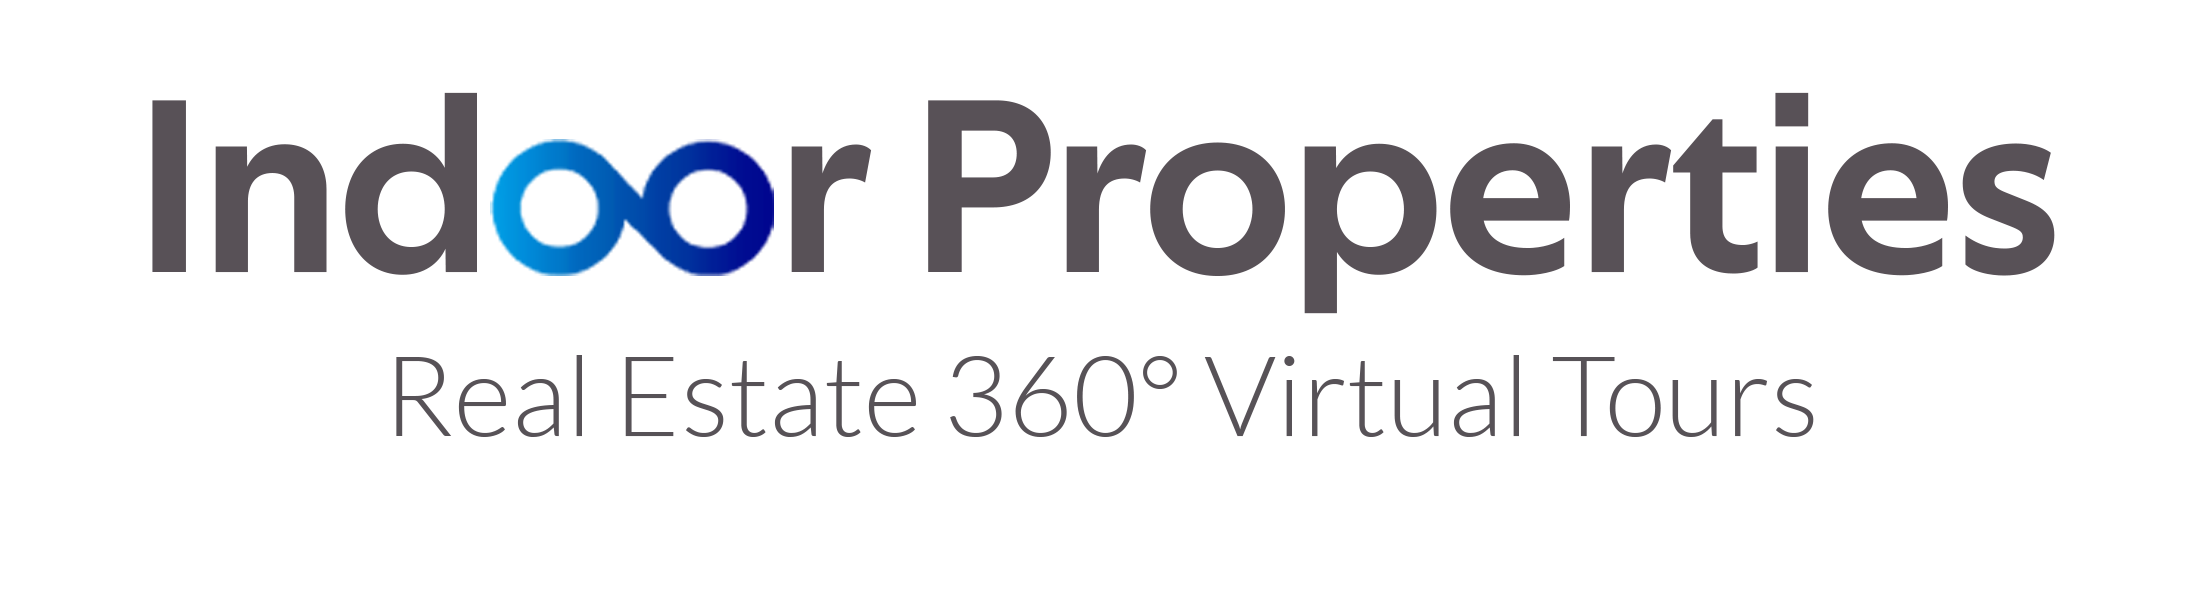 Indoor Prooperties 360 virtual tour